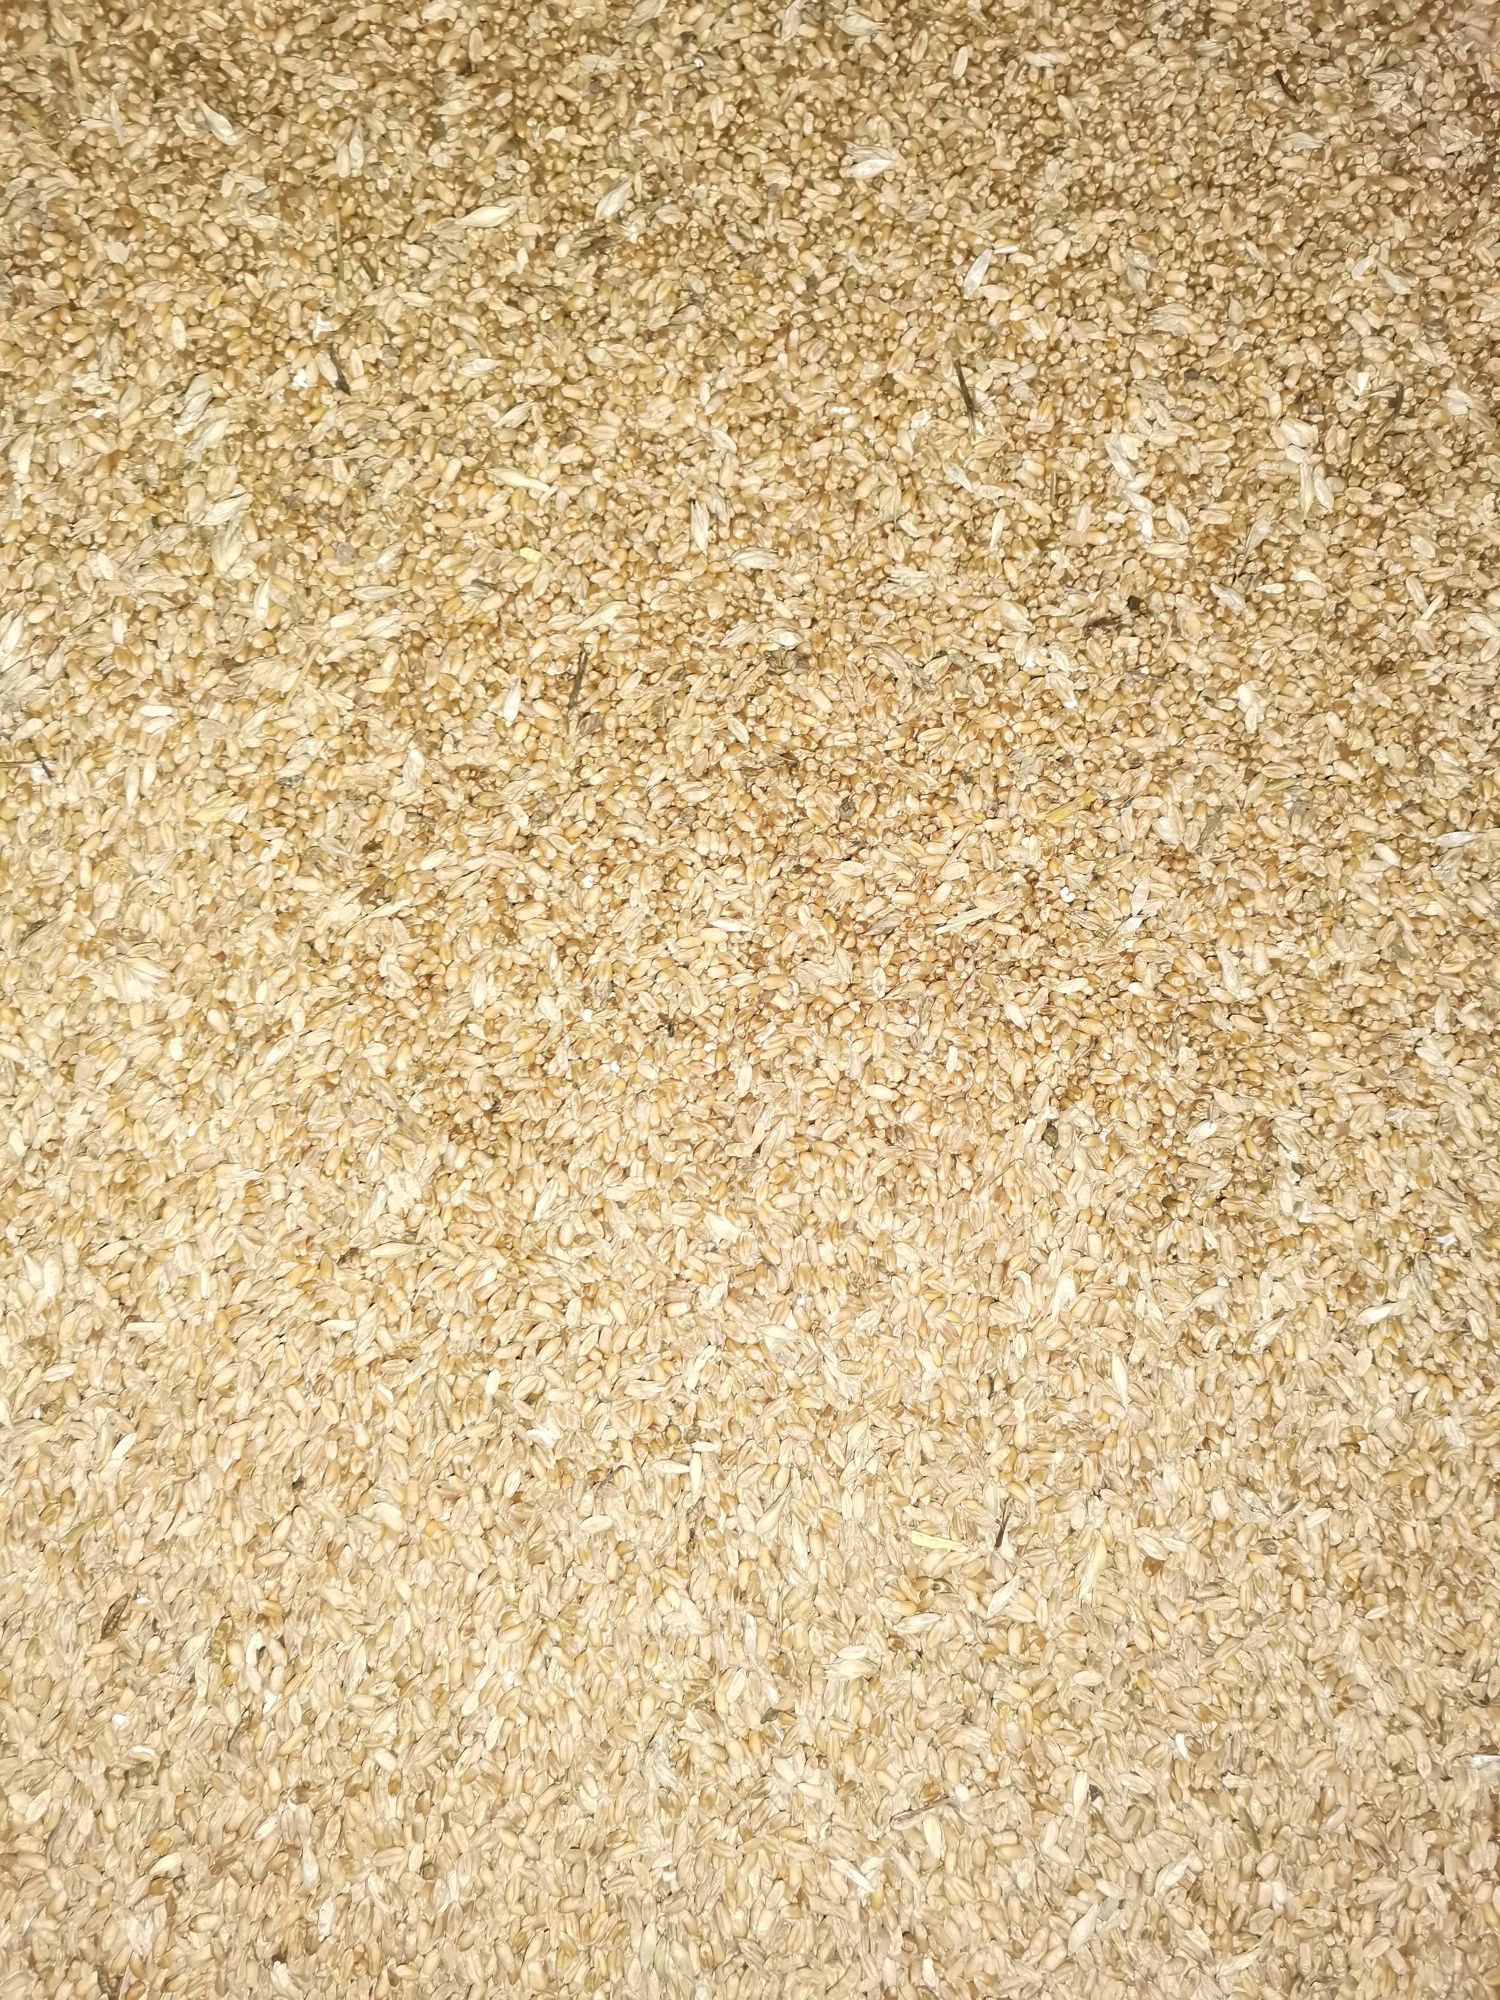 Пшениця, Ячмінь, зерно 3 клас